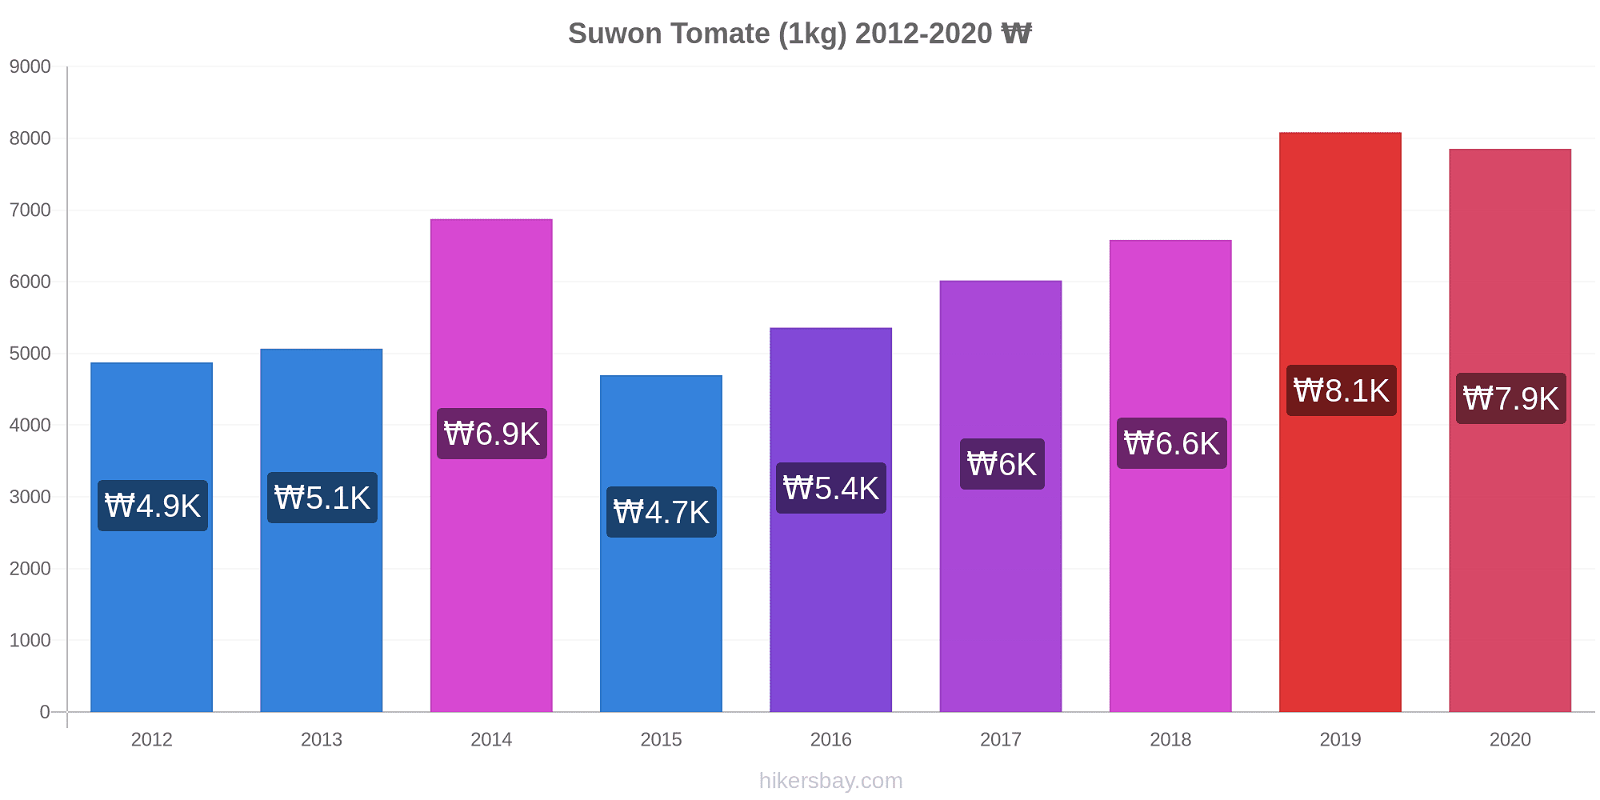 Suwon changements de prix Tomate (1kg) hikersbay.com